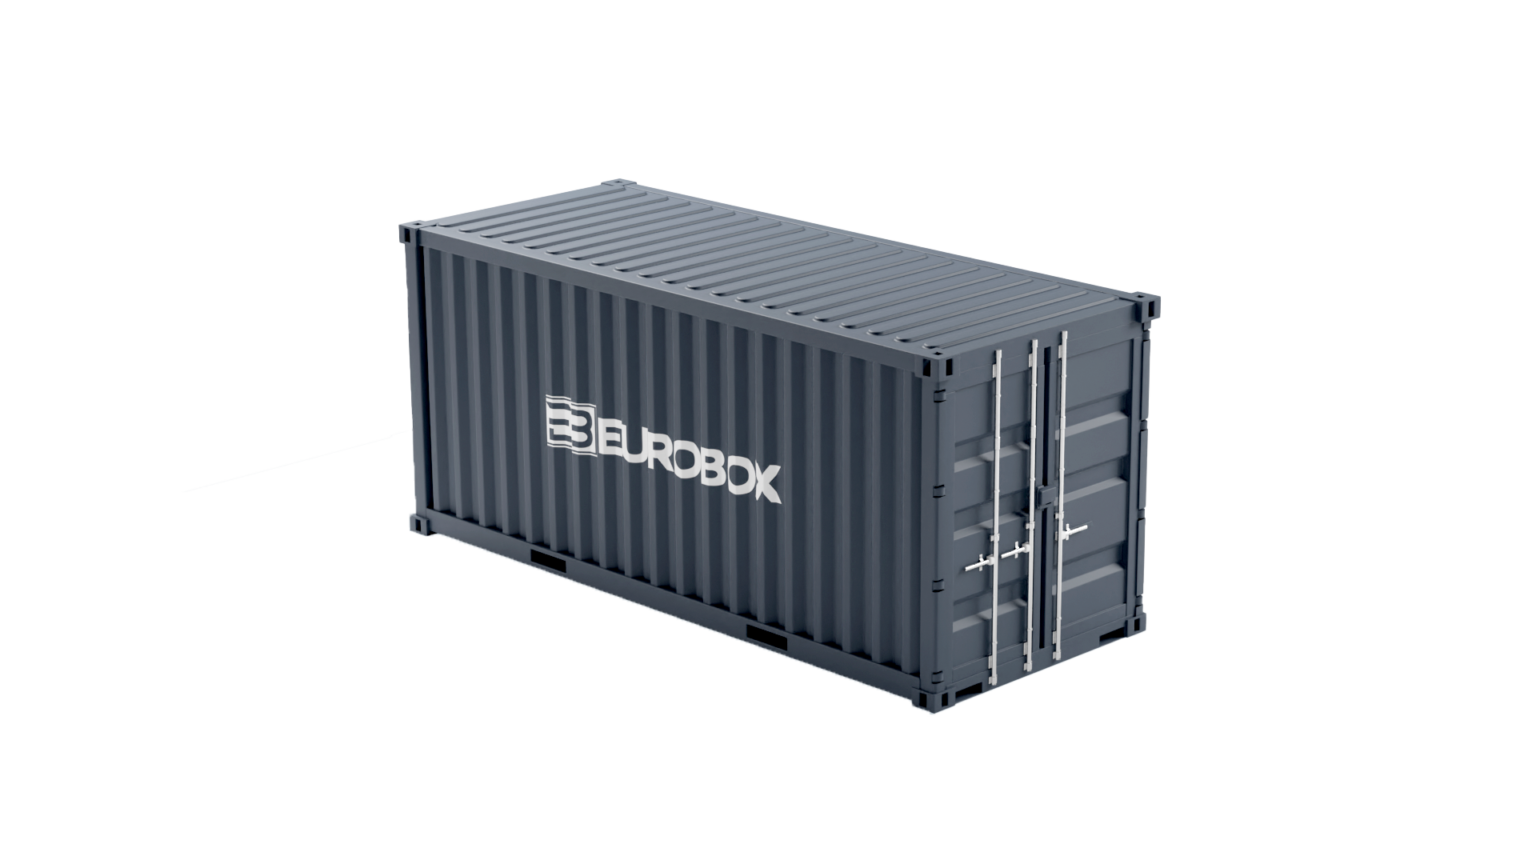 Container maritime 20 pieds dry disponible en neuf et occasion pour stockage flexible, adaptable et économique- eurobox_0